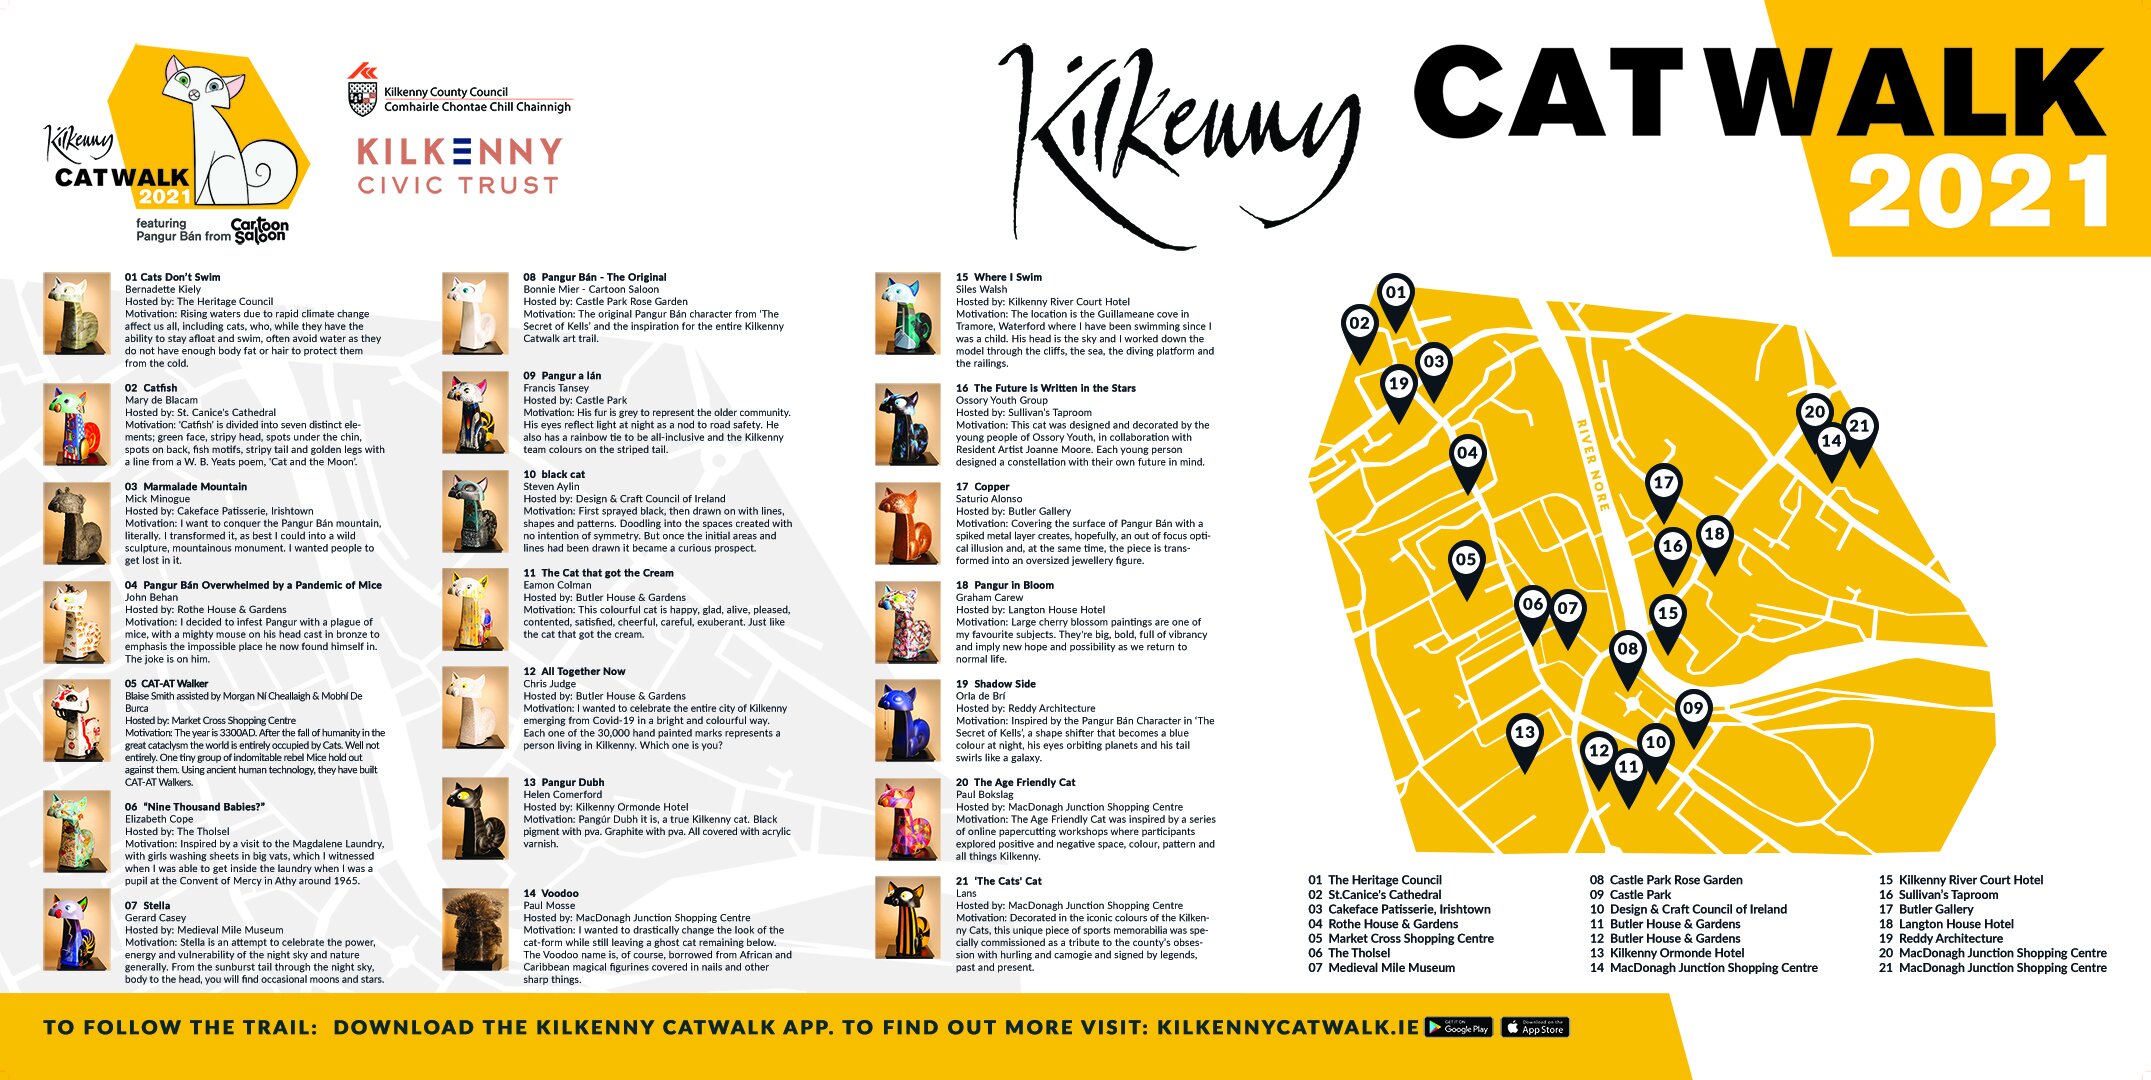 Kilkenny-Catwalk-Map-8-Oct-21.jpg